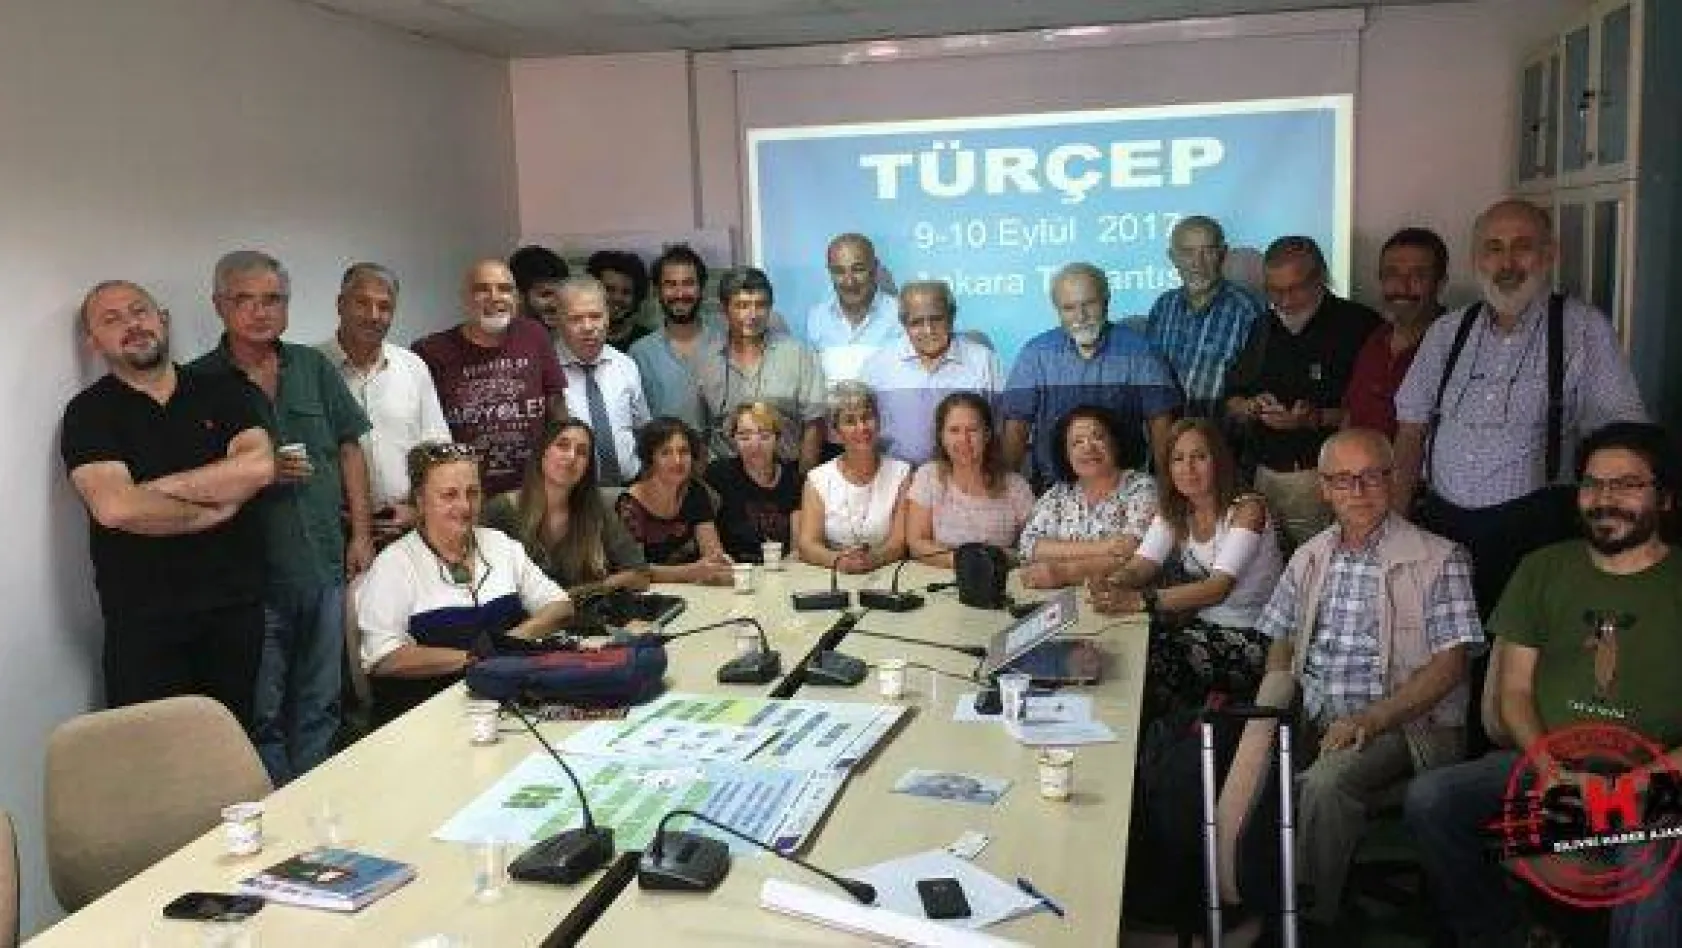 Çevreciler TURÇEP'e katıldı